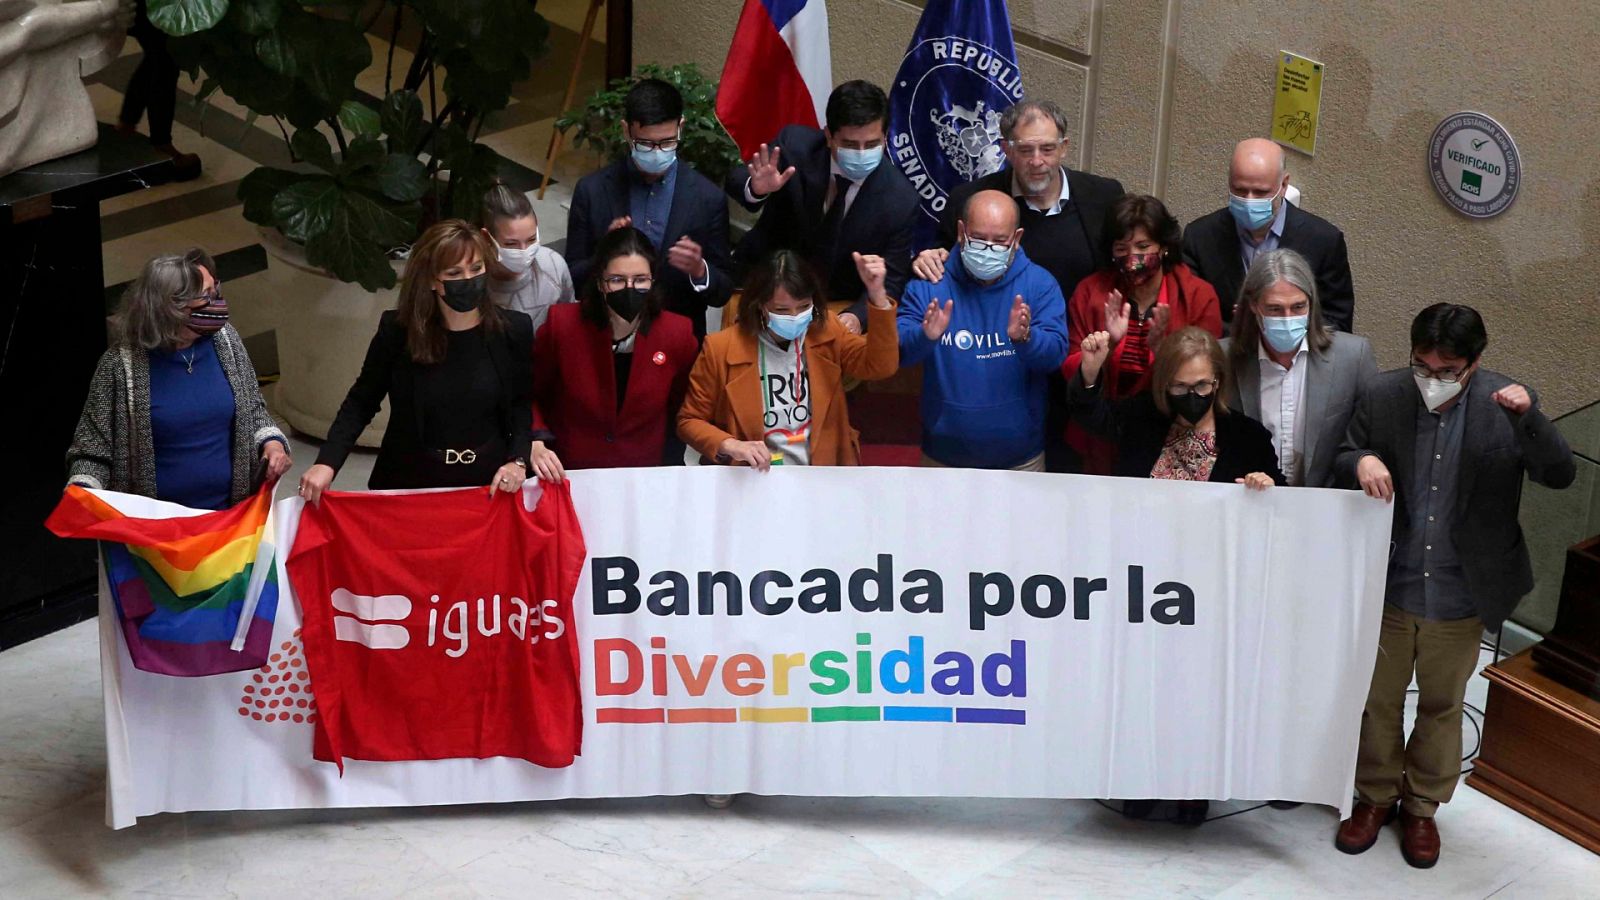 Cinco Continentes - Chile, a un paso de legalizar el matrimonio igualitario - Escuchar ahora